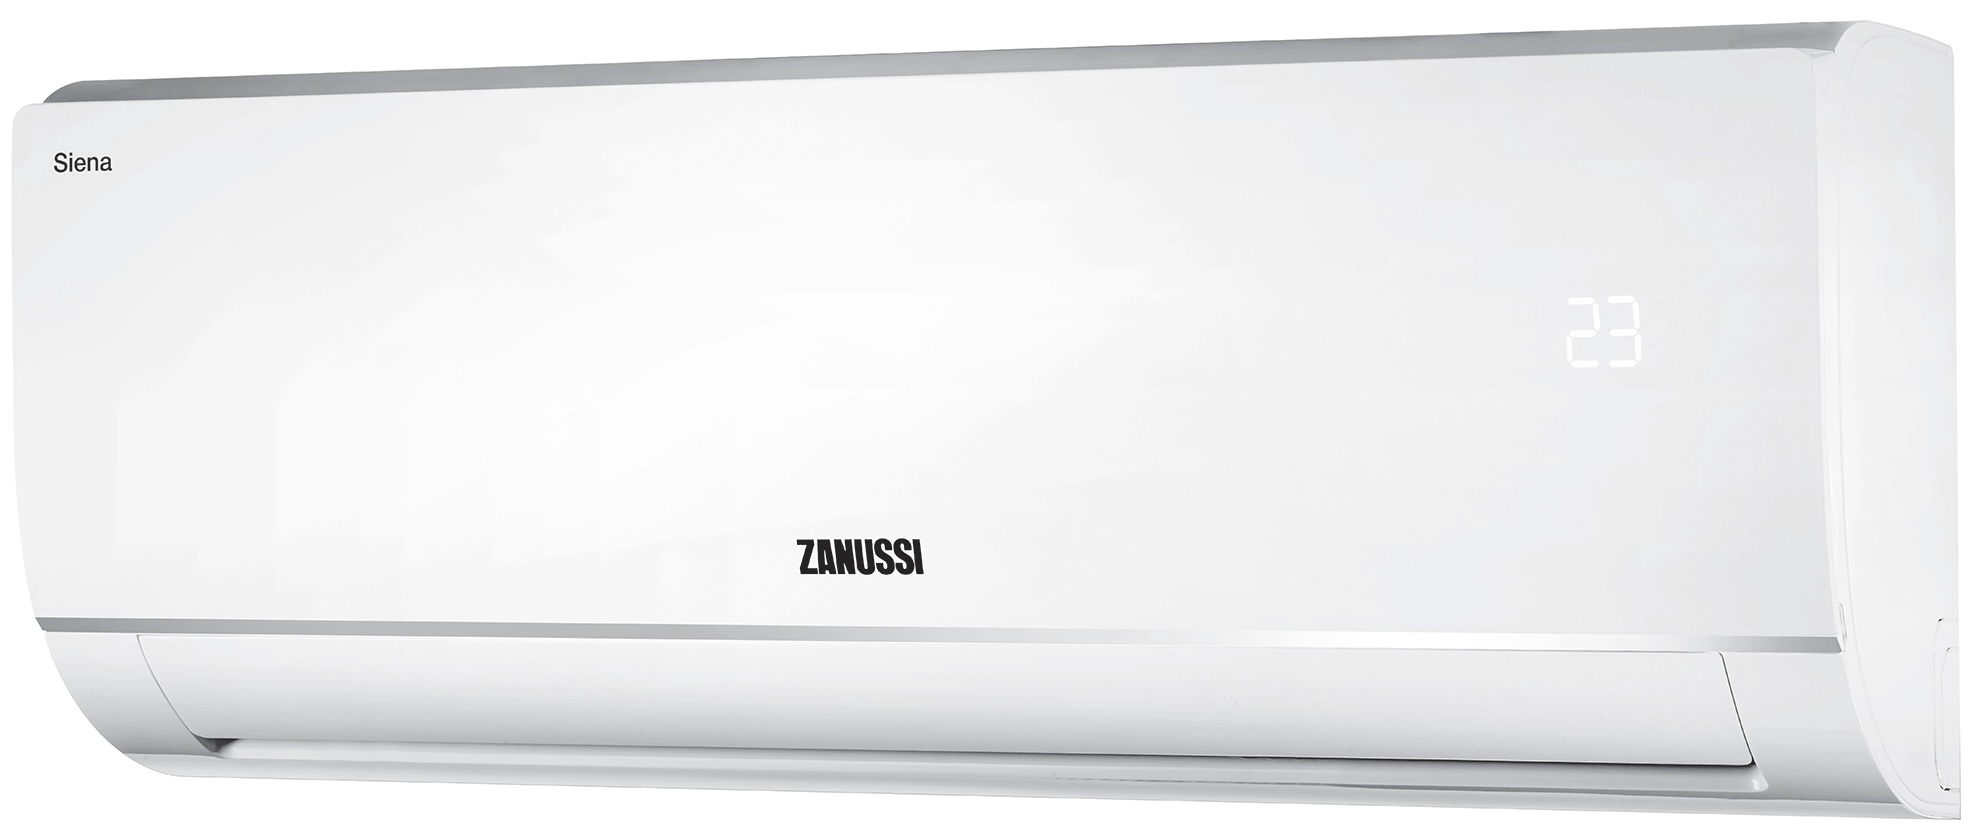 Кондиціонер спліт-система Zanussi Siena ZACS-24 HS/A21/N1 відгуки - зображення 5